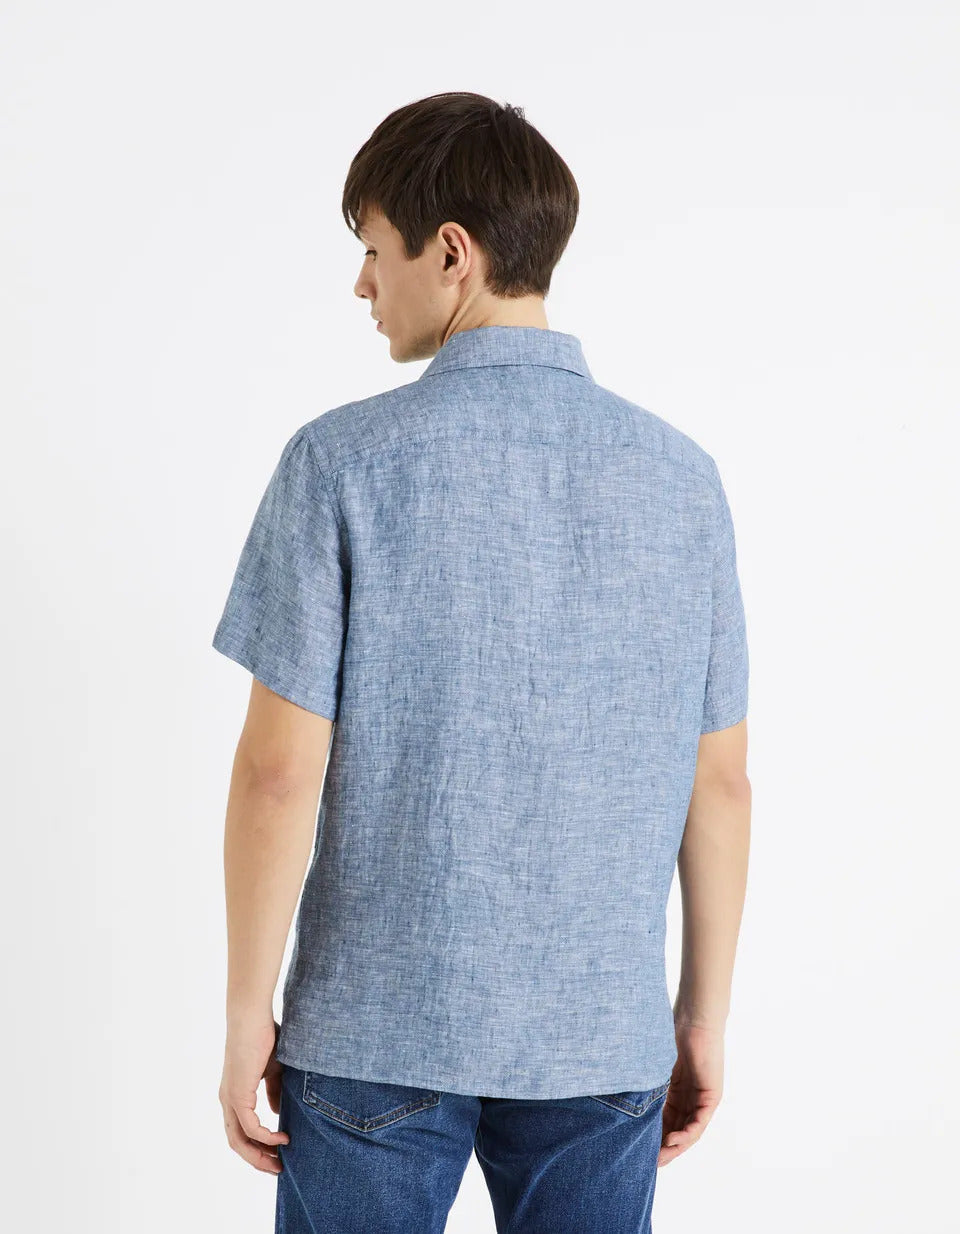 Regular-Fit 100% Linen Shirt - Chambray - 02